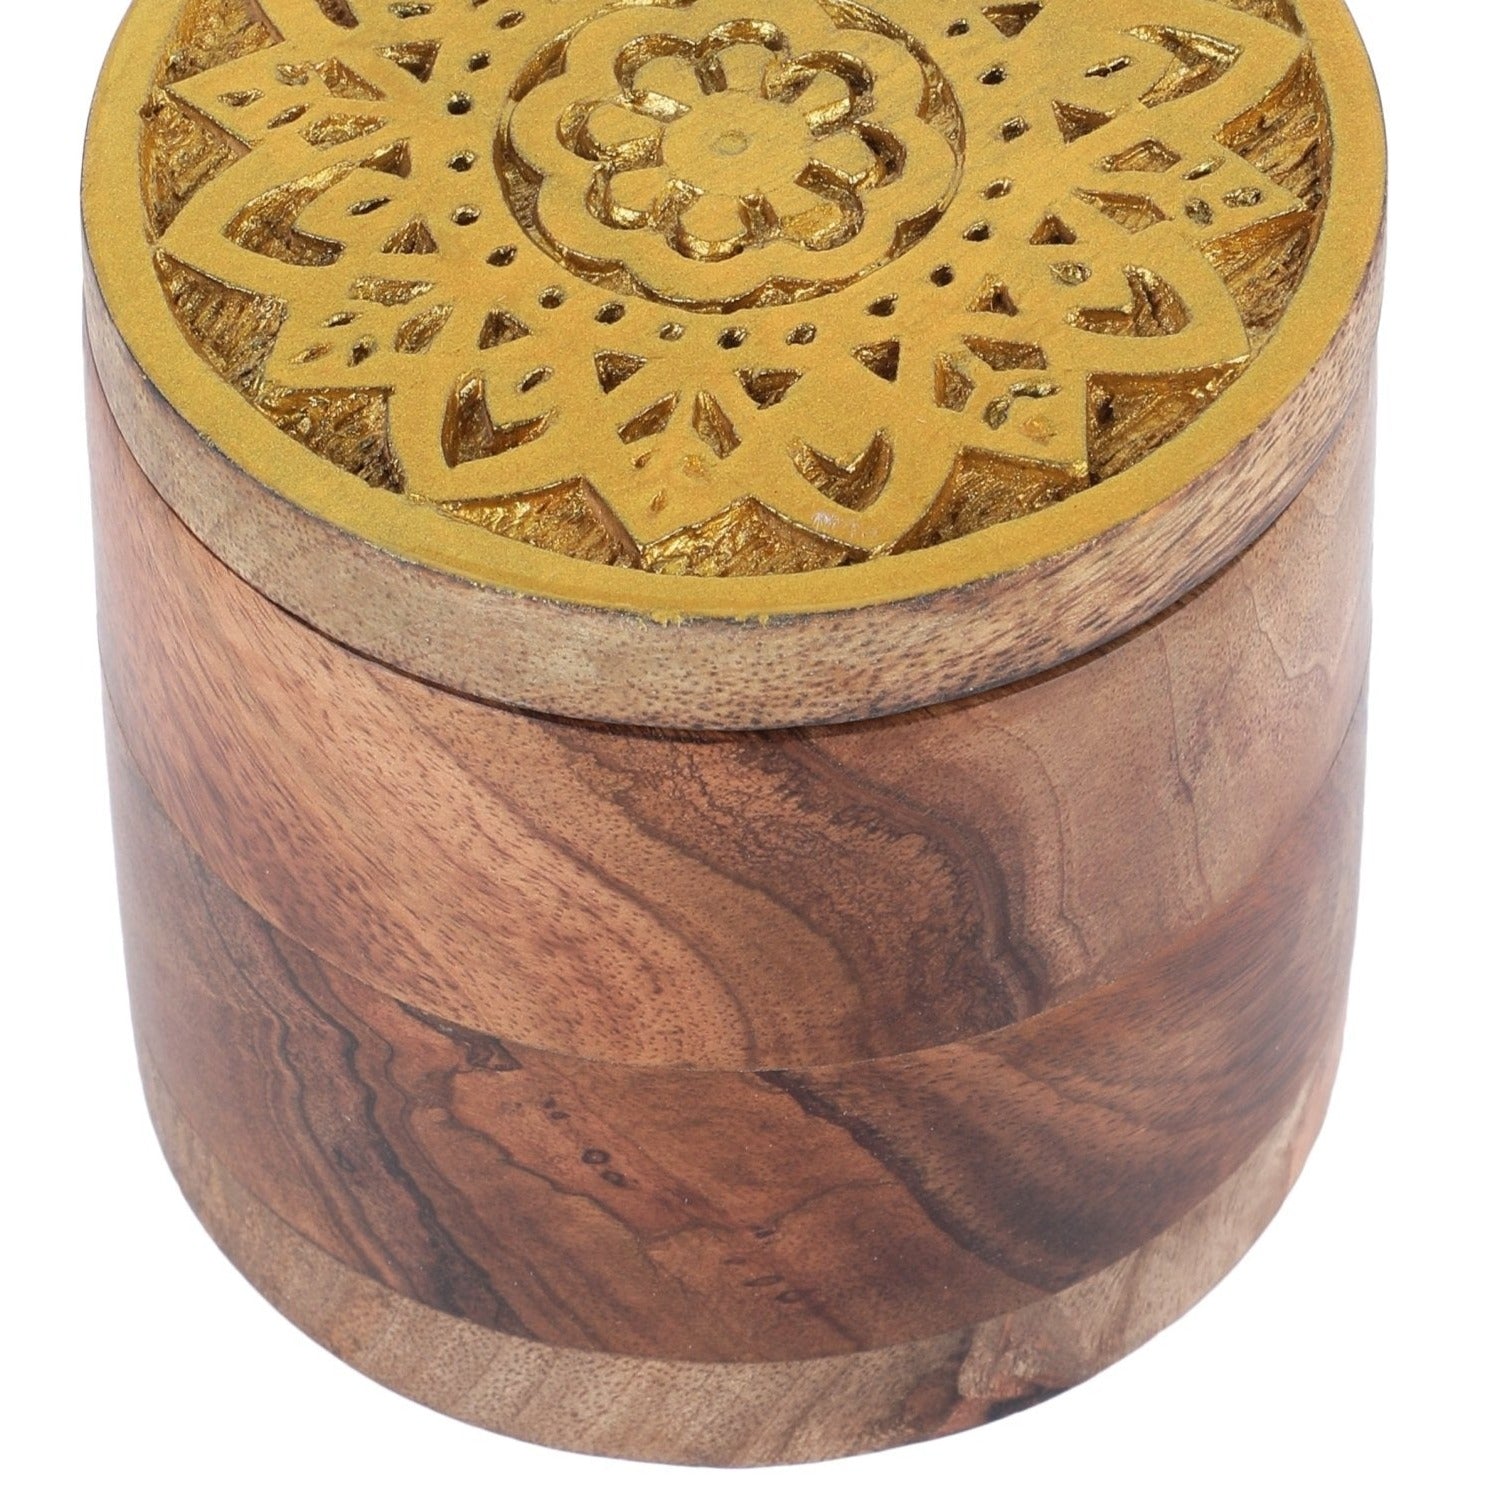 Wooden Block Hand Carved Storage Box - Small - Nurture India